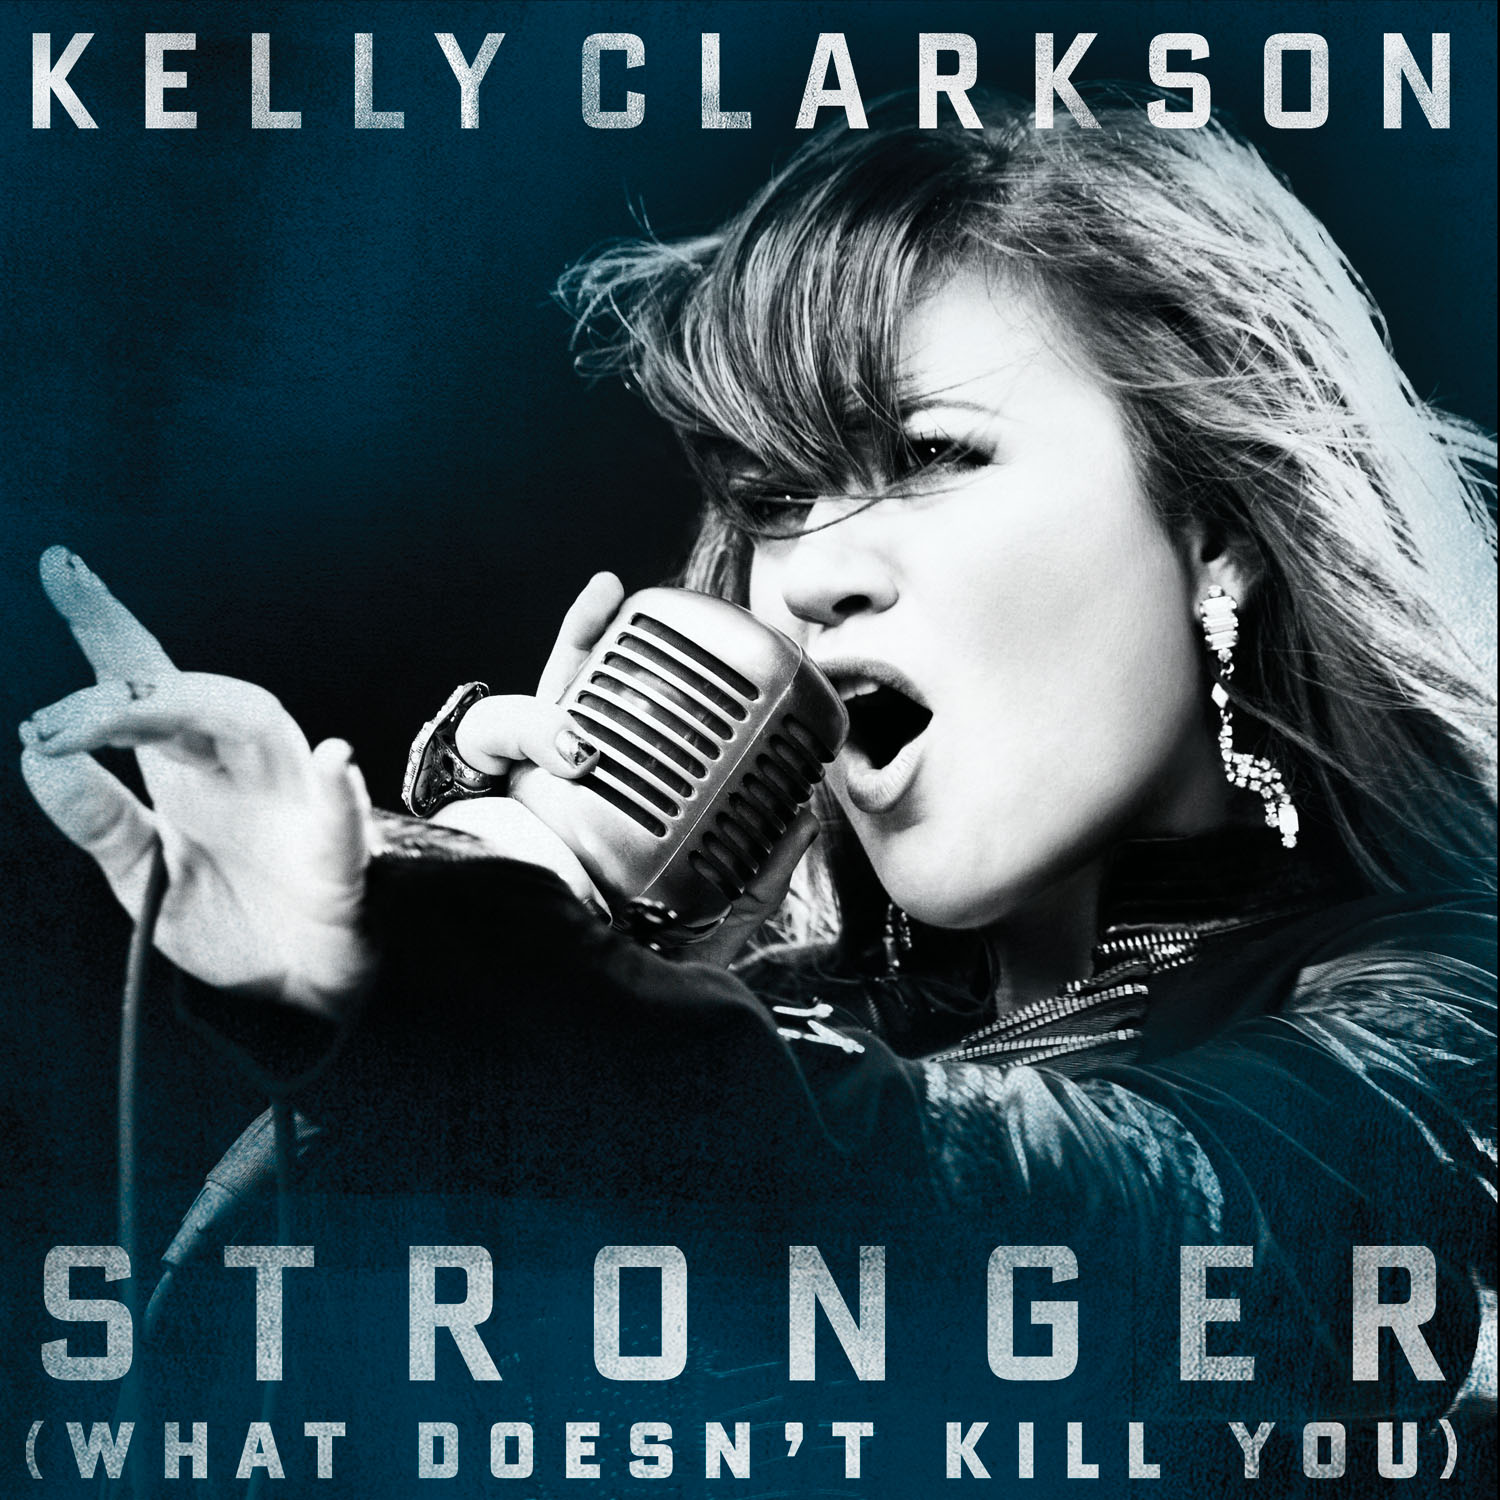 http://4.bp.blogspot.com/-thZKCouzGPw/T6Dgz97xFPI/AAAAAAAAAtE/xXVxFuWbHZ4/s1600/Kelly-Clarkson-What-Doesnt-Kill-You.jpg